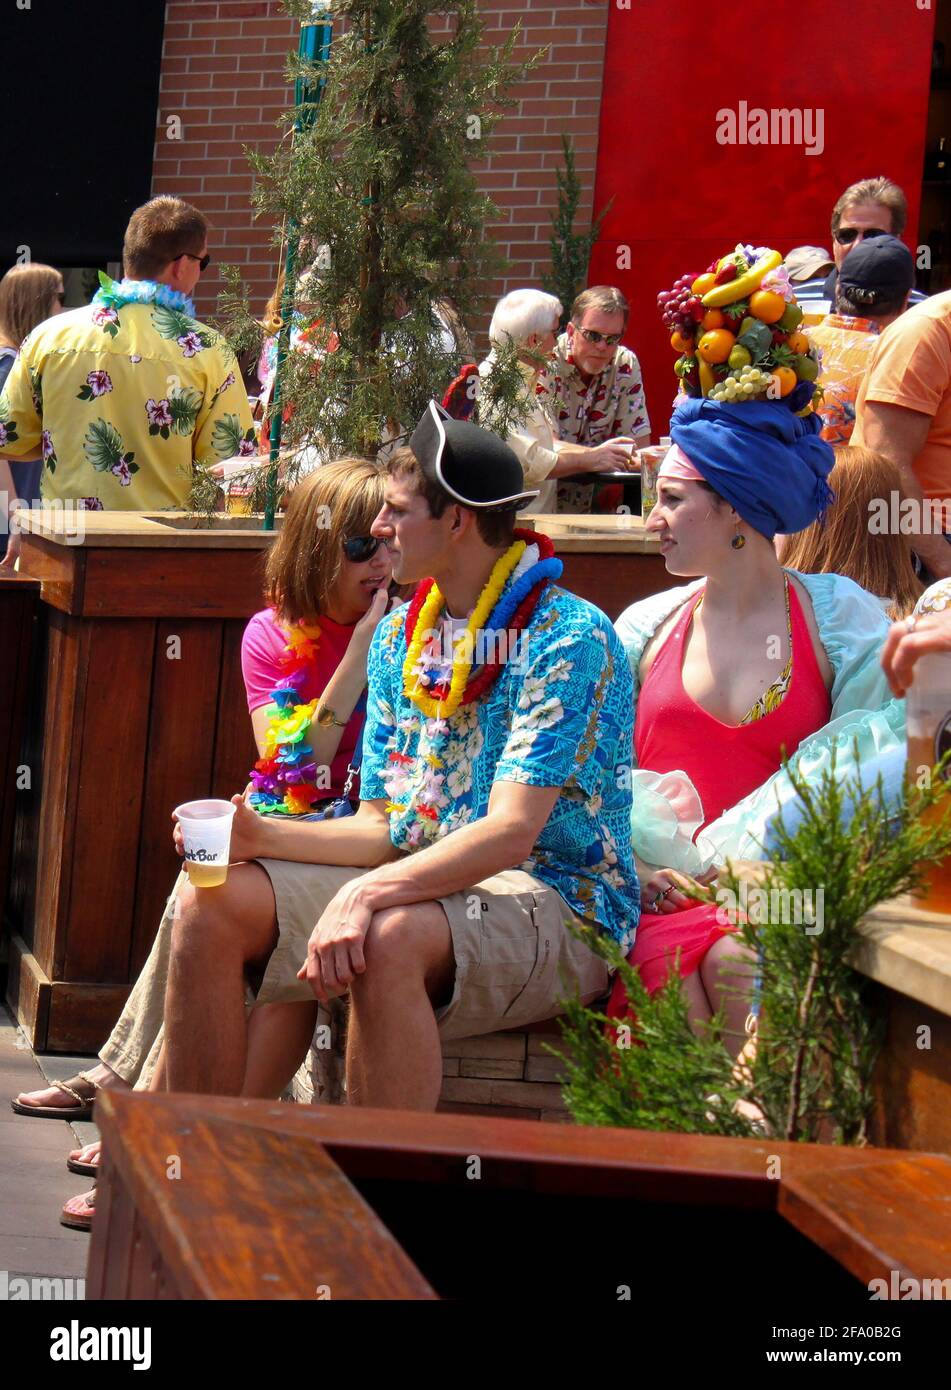 Familie in tropischer Kleidung... Frau mit Früchten auf dem Kopf Sitzen Sie mit anderen Partygängern im P&L District Kansas Stadt Mo USA Mai 5 2011 Stockfoto